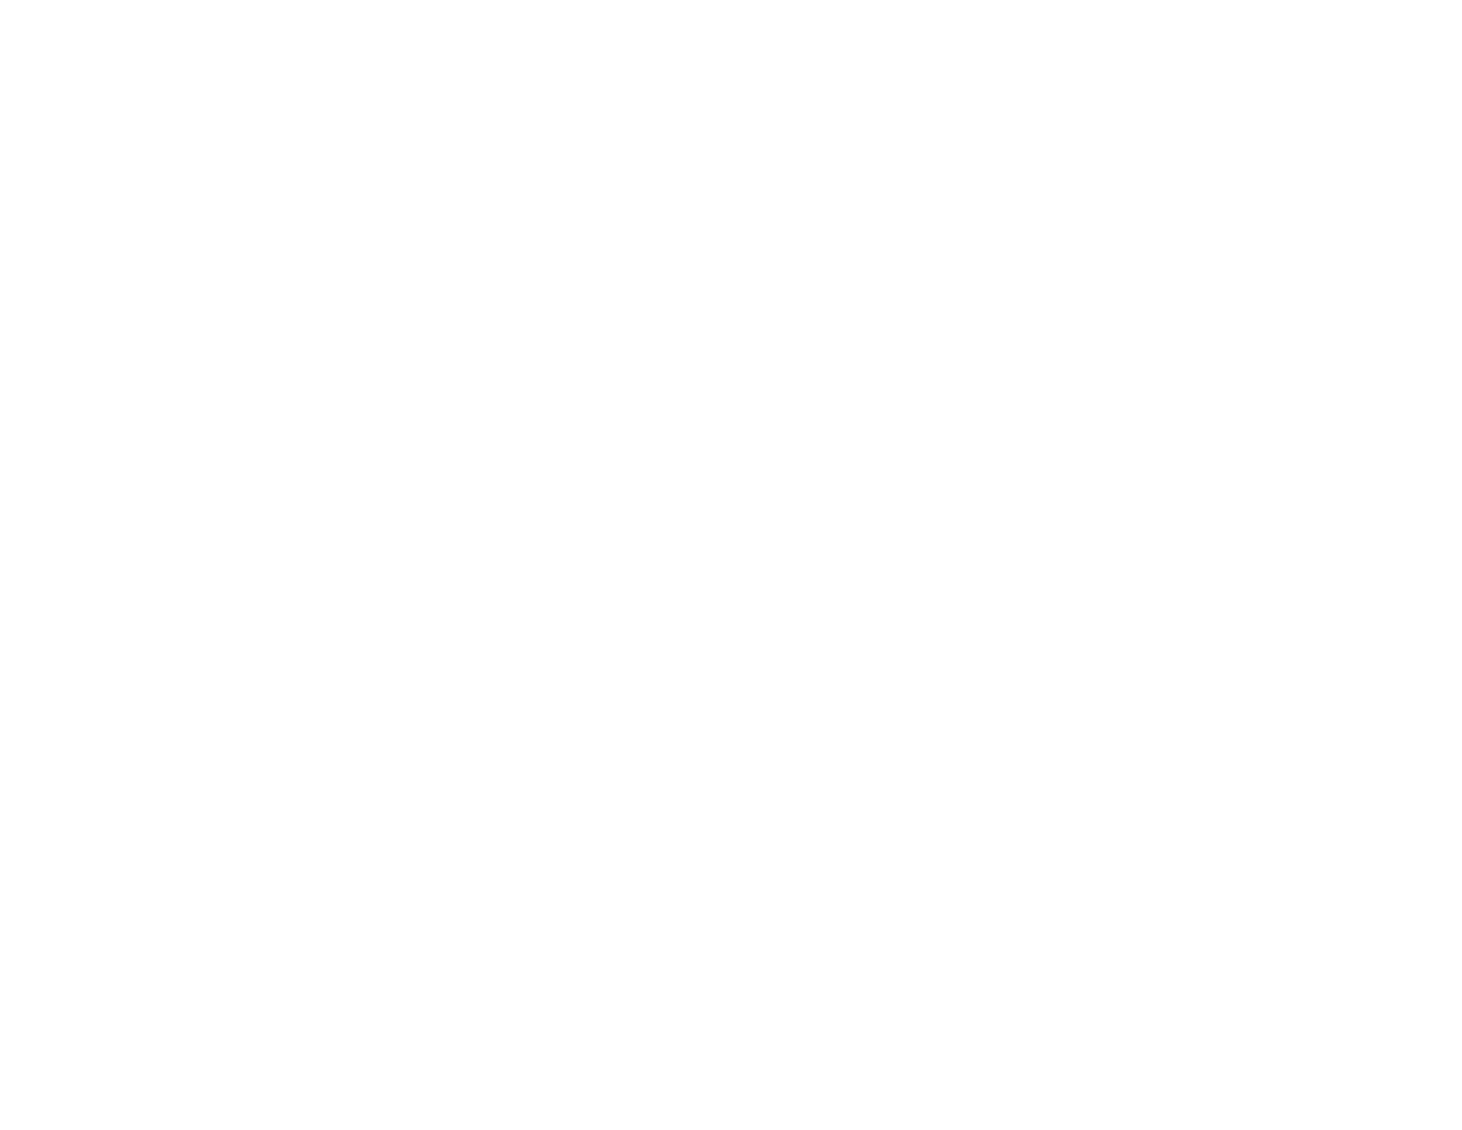 Sandoval Abogados, reconocido en el ranking Leaders League